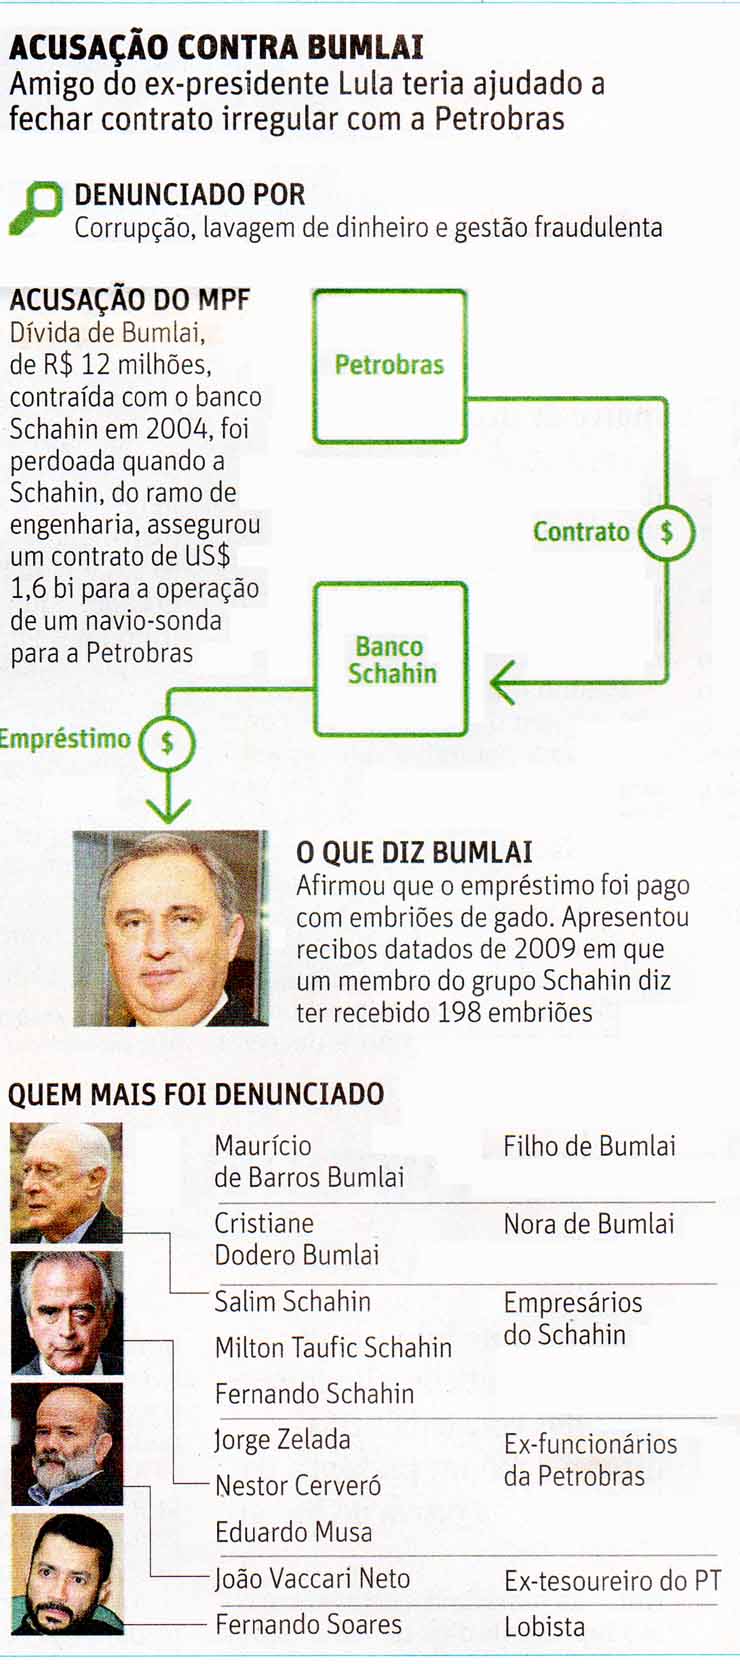 Folha de So Paulo - 15/12/15 - Caso Bumlai: Os denunciados